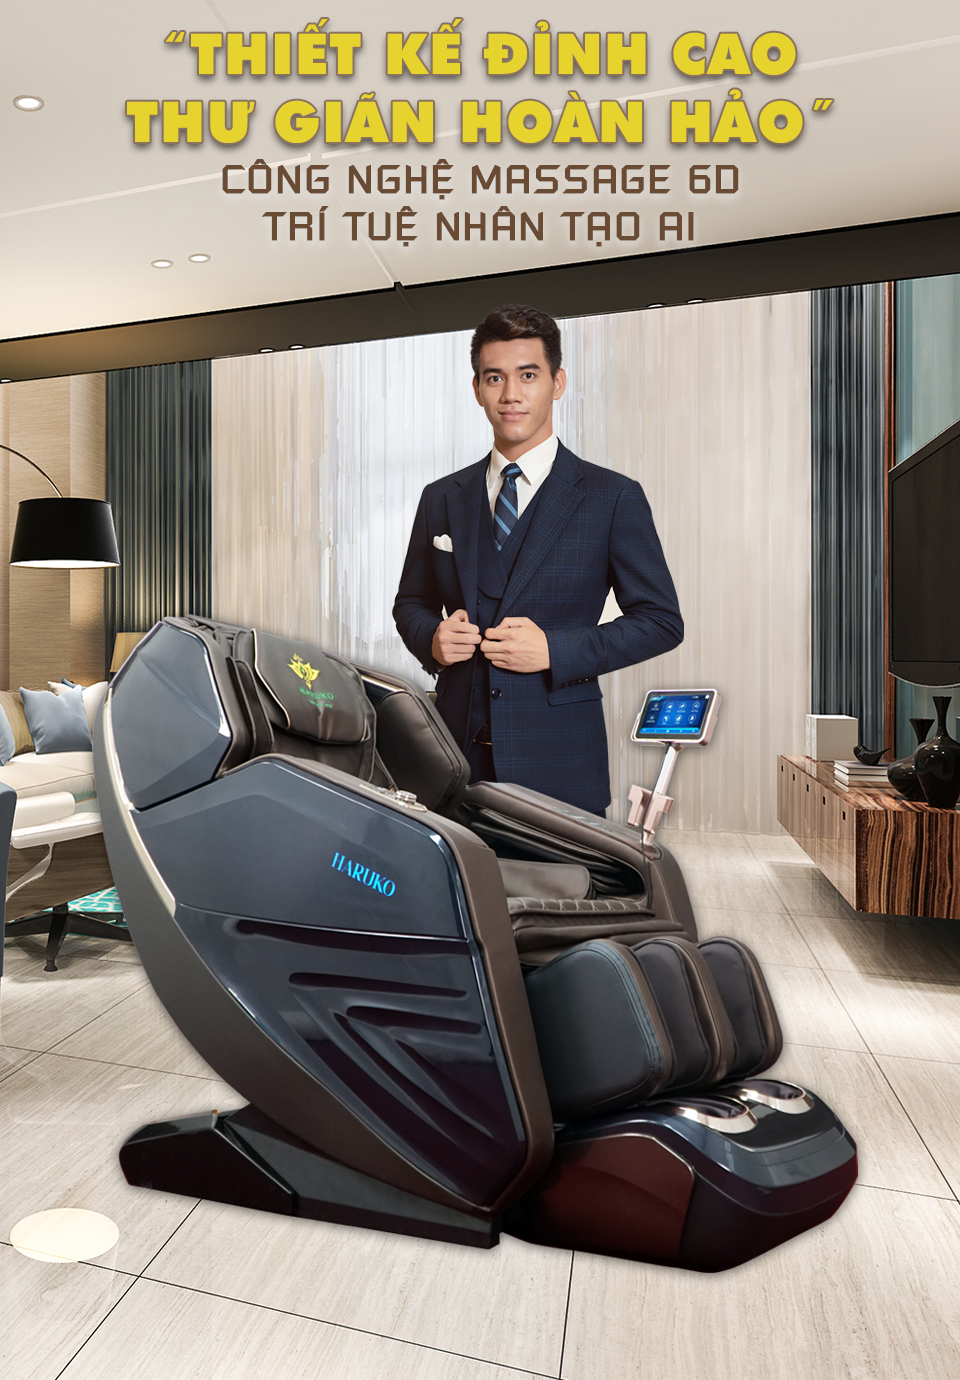 Ghế massage Akina Q8 sỡ hữu thiết kế đỉnh cao cùng những công nghệ tốt nhất thị trường hiện nay